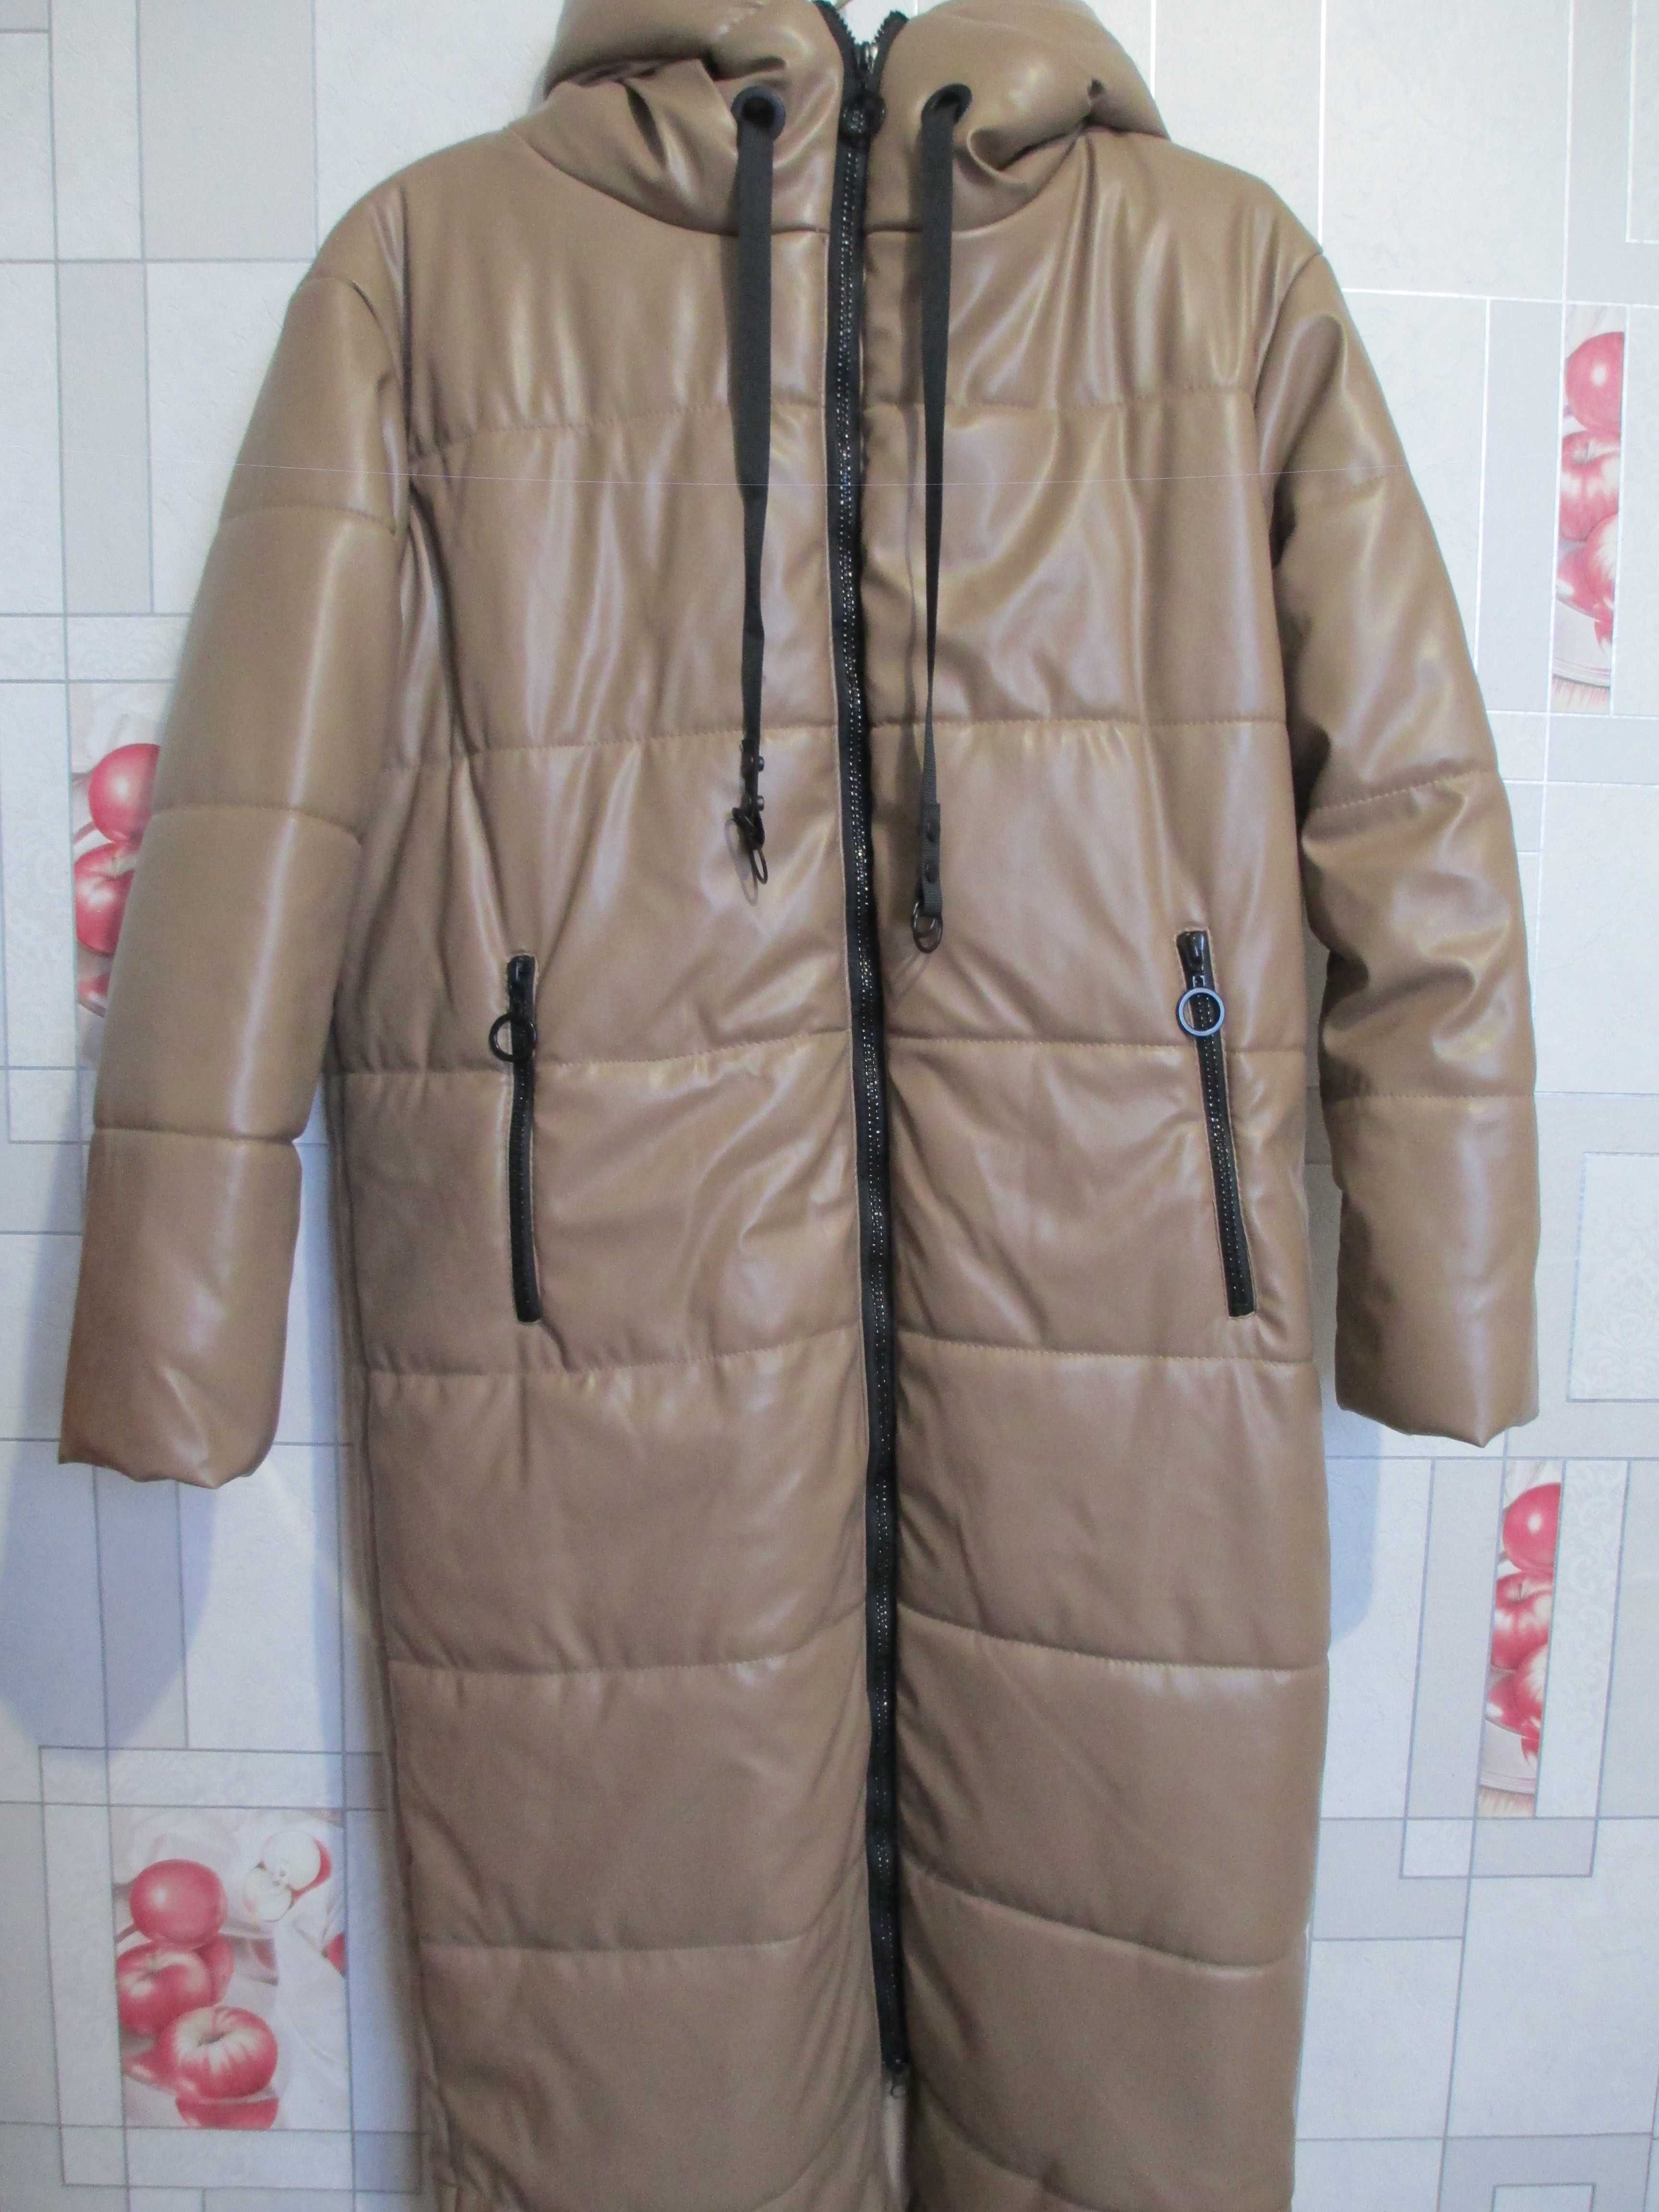 Зимнее длинное пальто куртка экокожа 48-50 р.